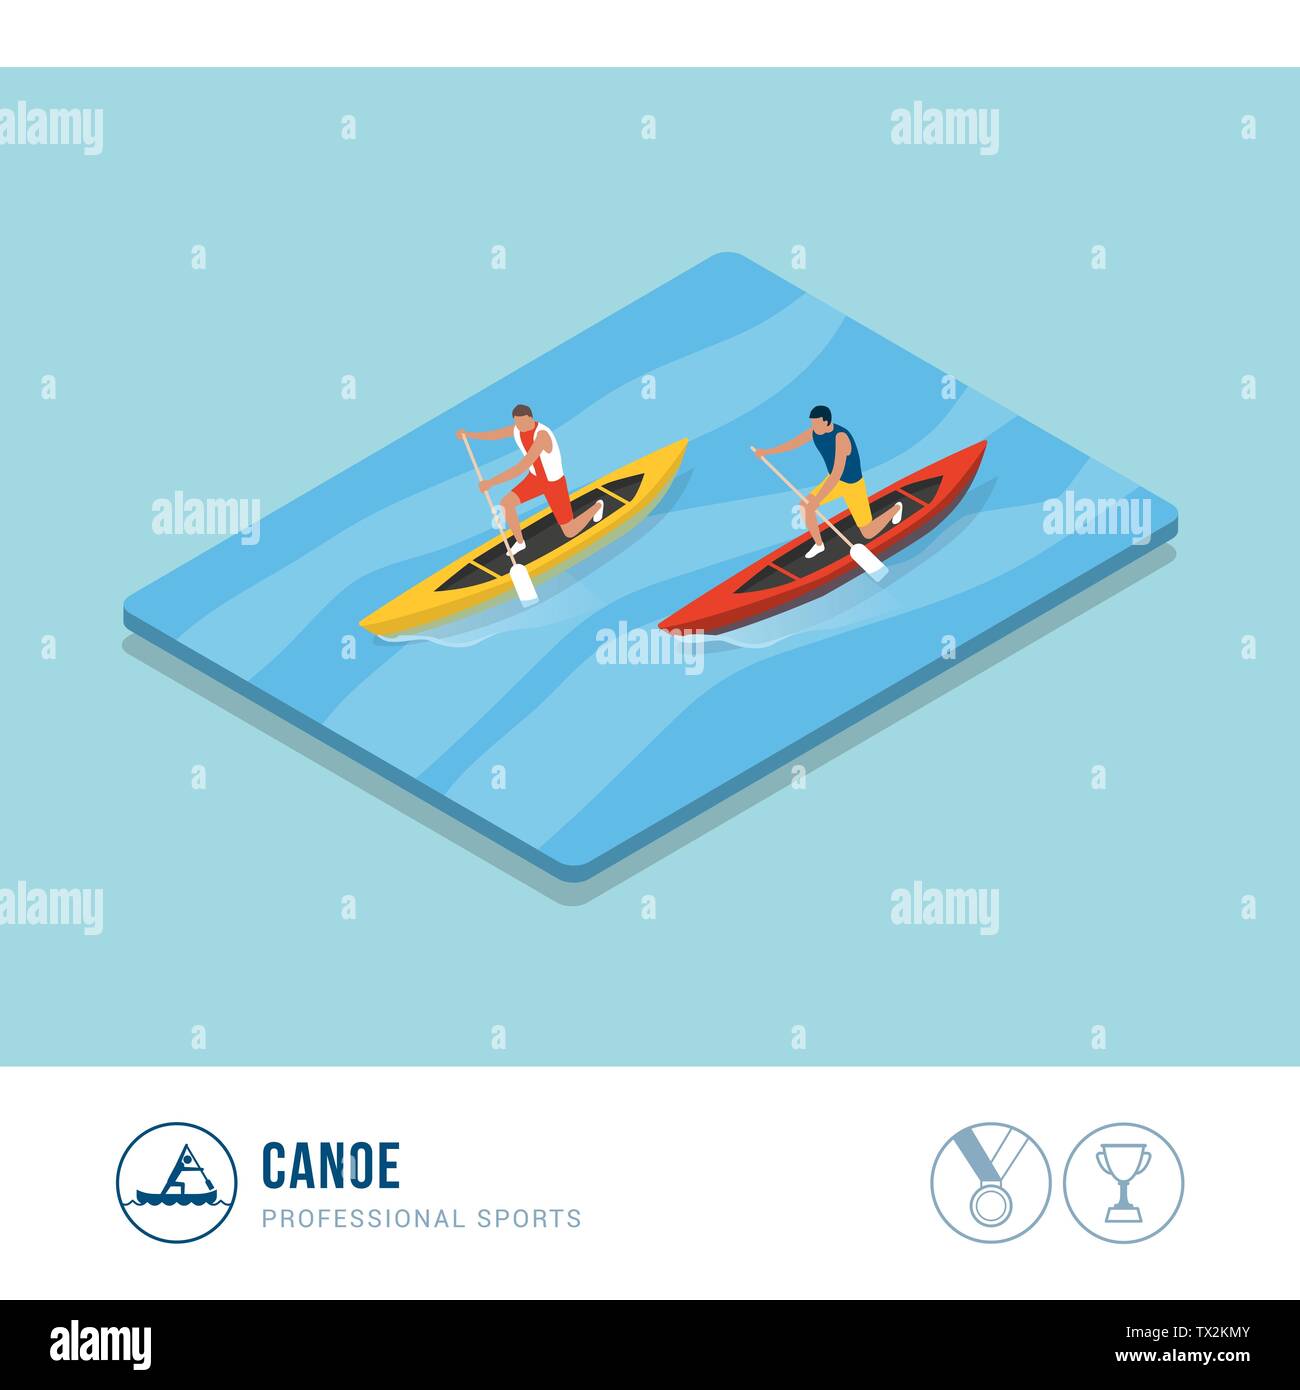 Professionelle Sport Wettbewerb: Canoers Paddeln in einem Kanu Rennen Stock Vektor